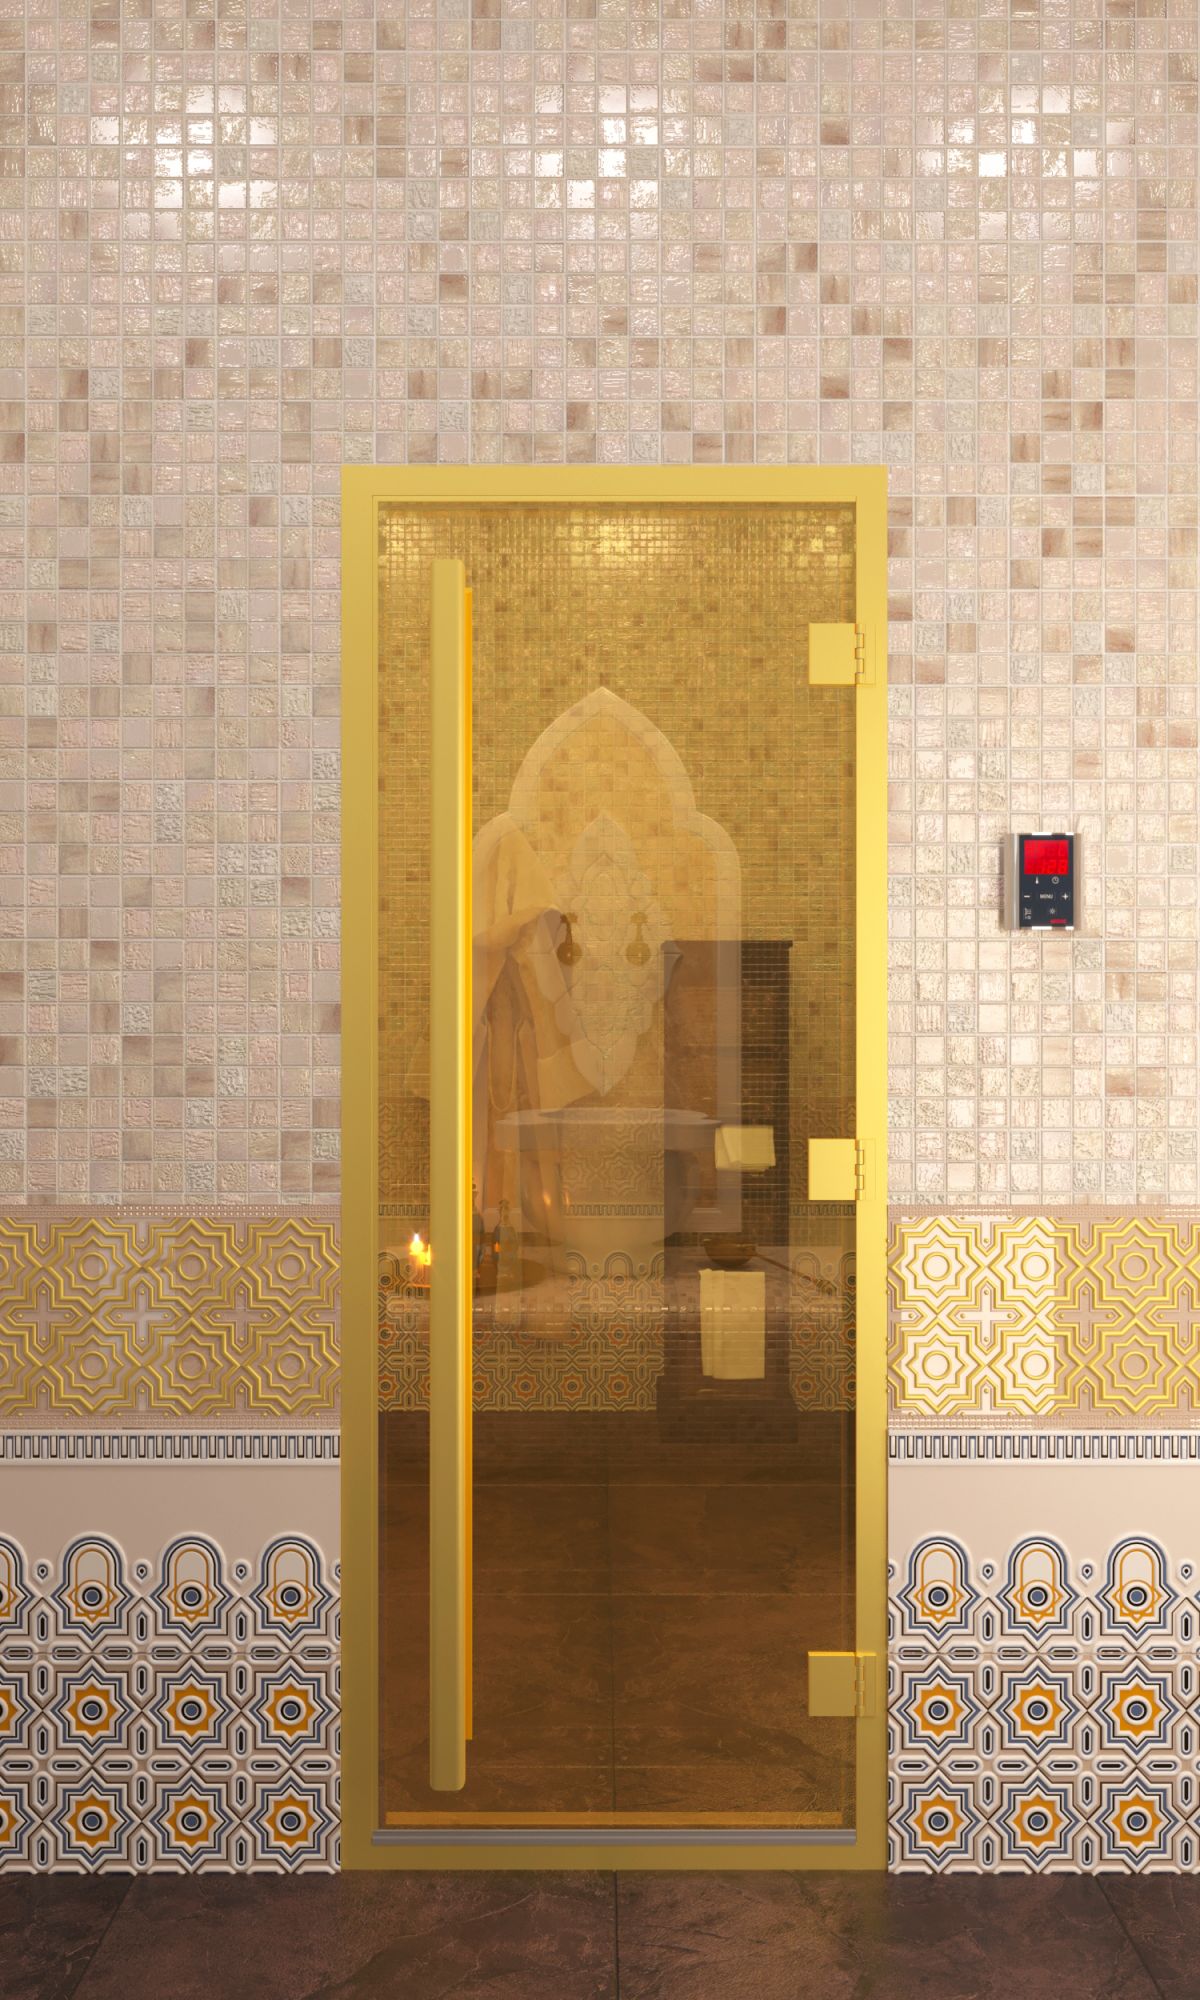 Дверь для турецкой бани DoorWood Престиж Хамам Золото Матовое 190х70 (по коробке)